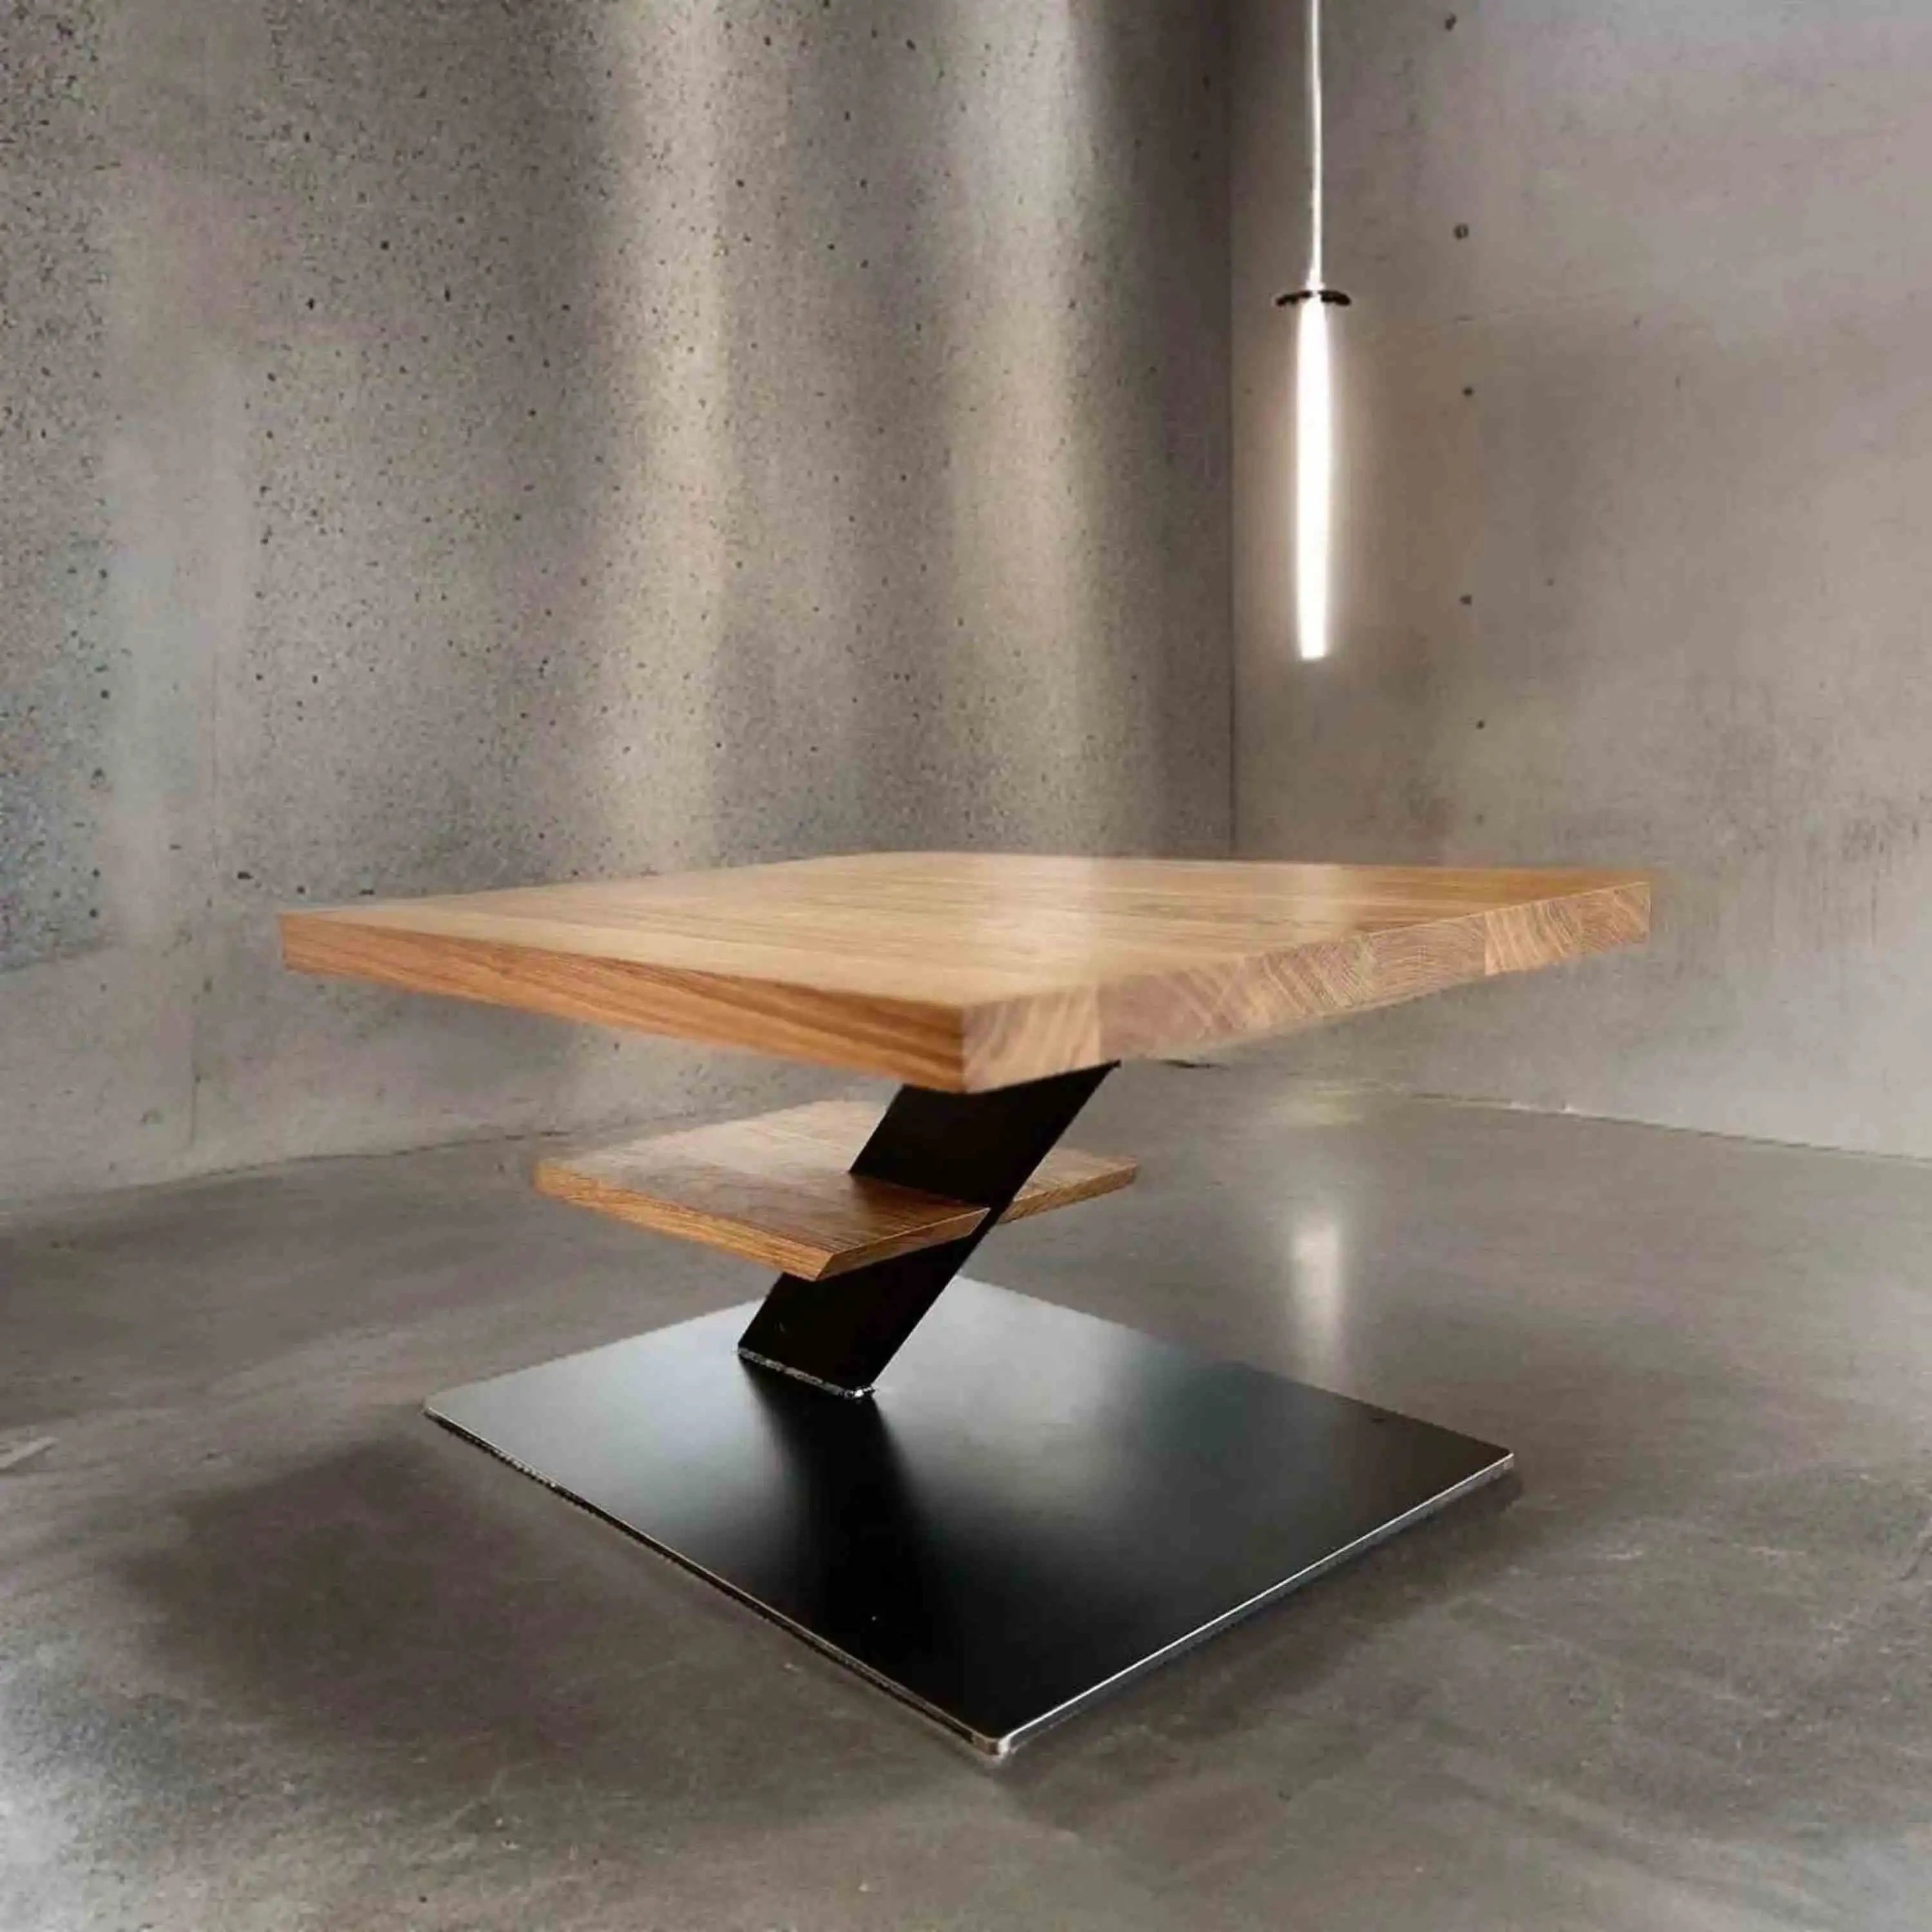 Ein Tisch, der nicht nur dekorativ ist, sondern auch genug Stauraum bietet, um Ordnung zu halten.